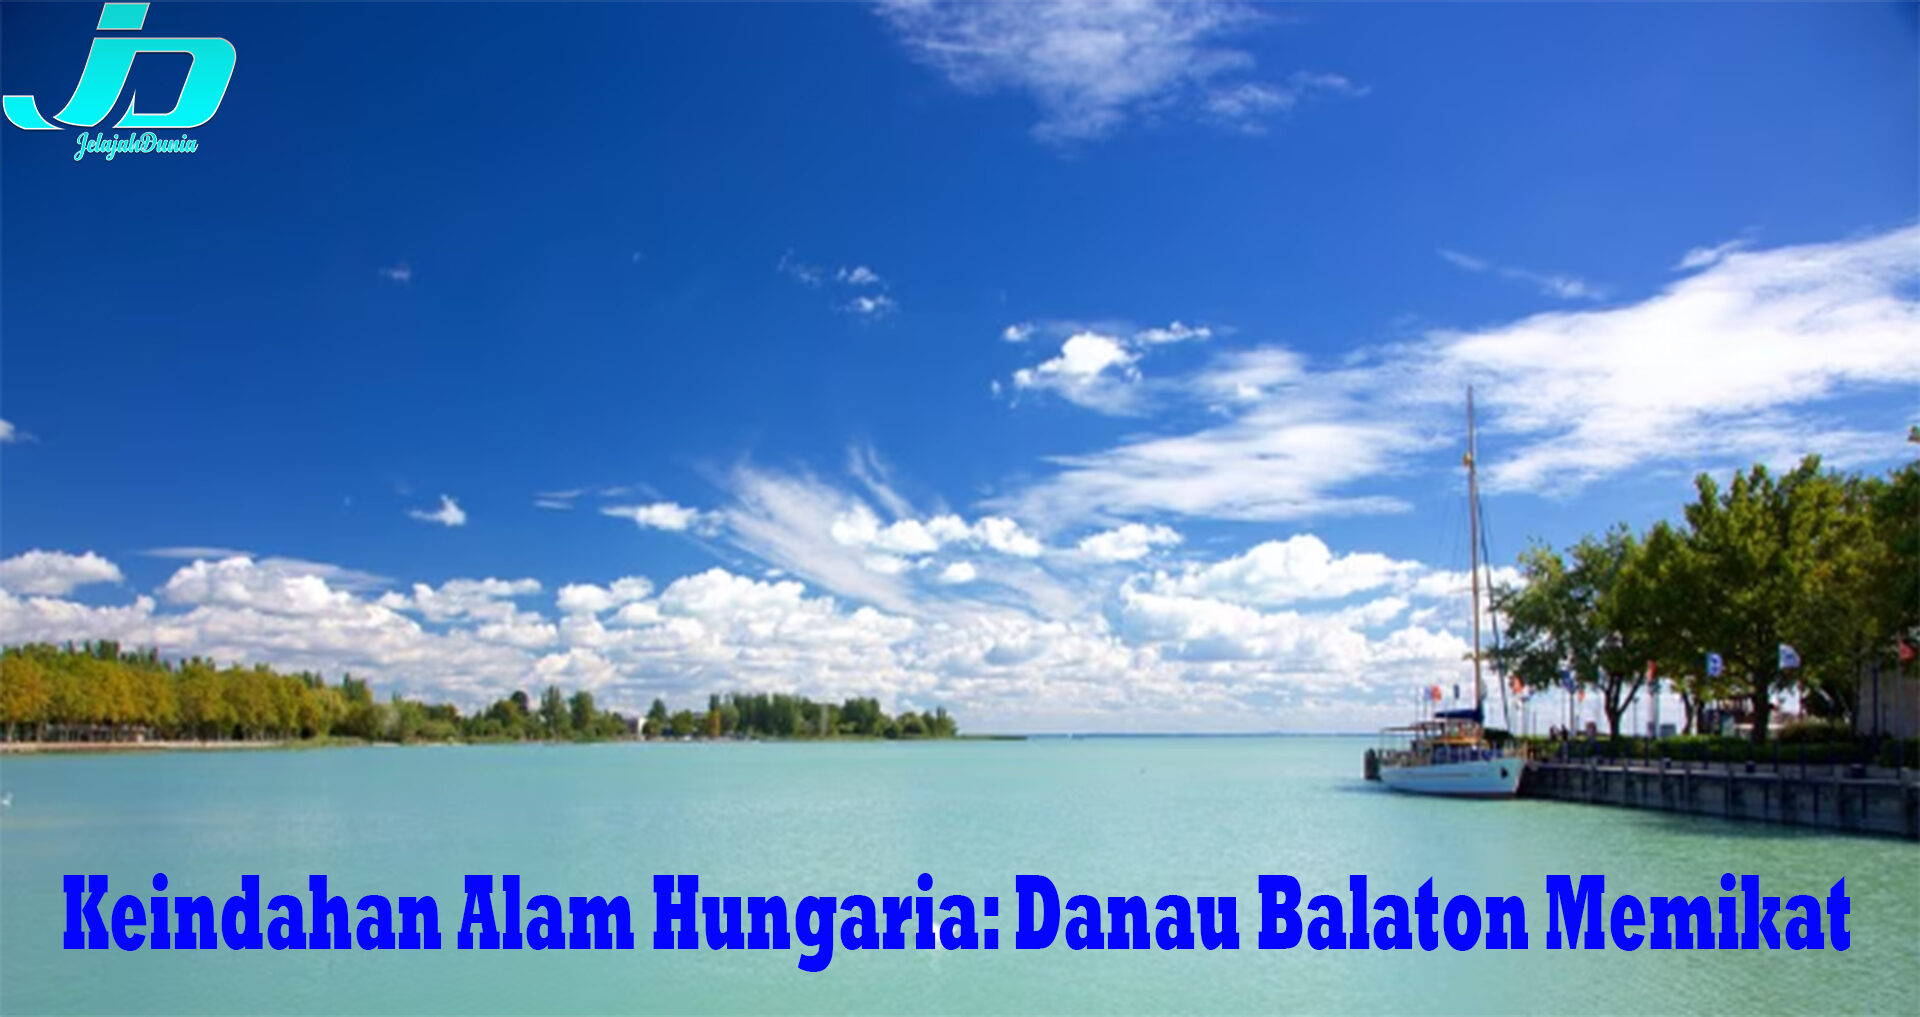 Keindahan Alam Hungaria: Danau Balaton Memikat